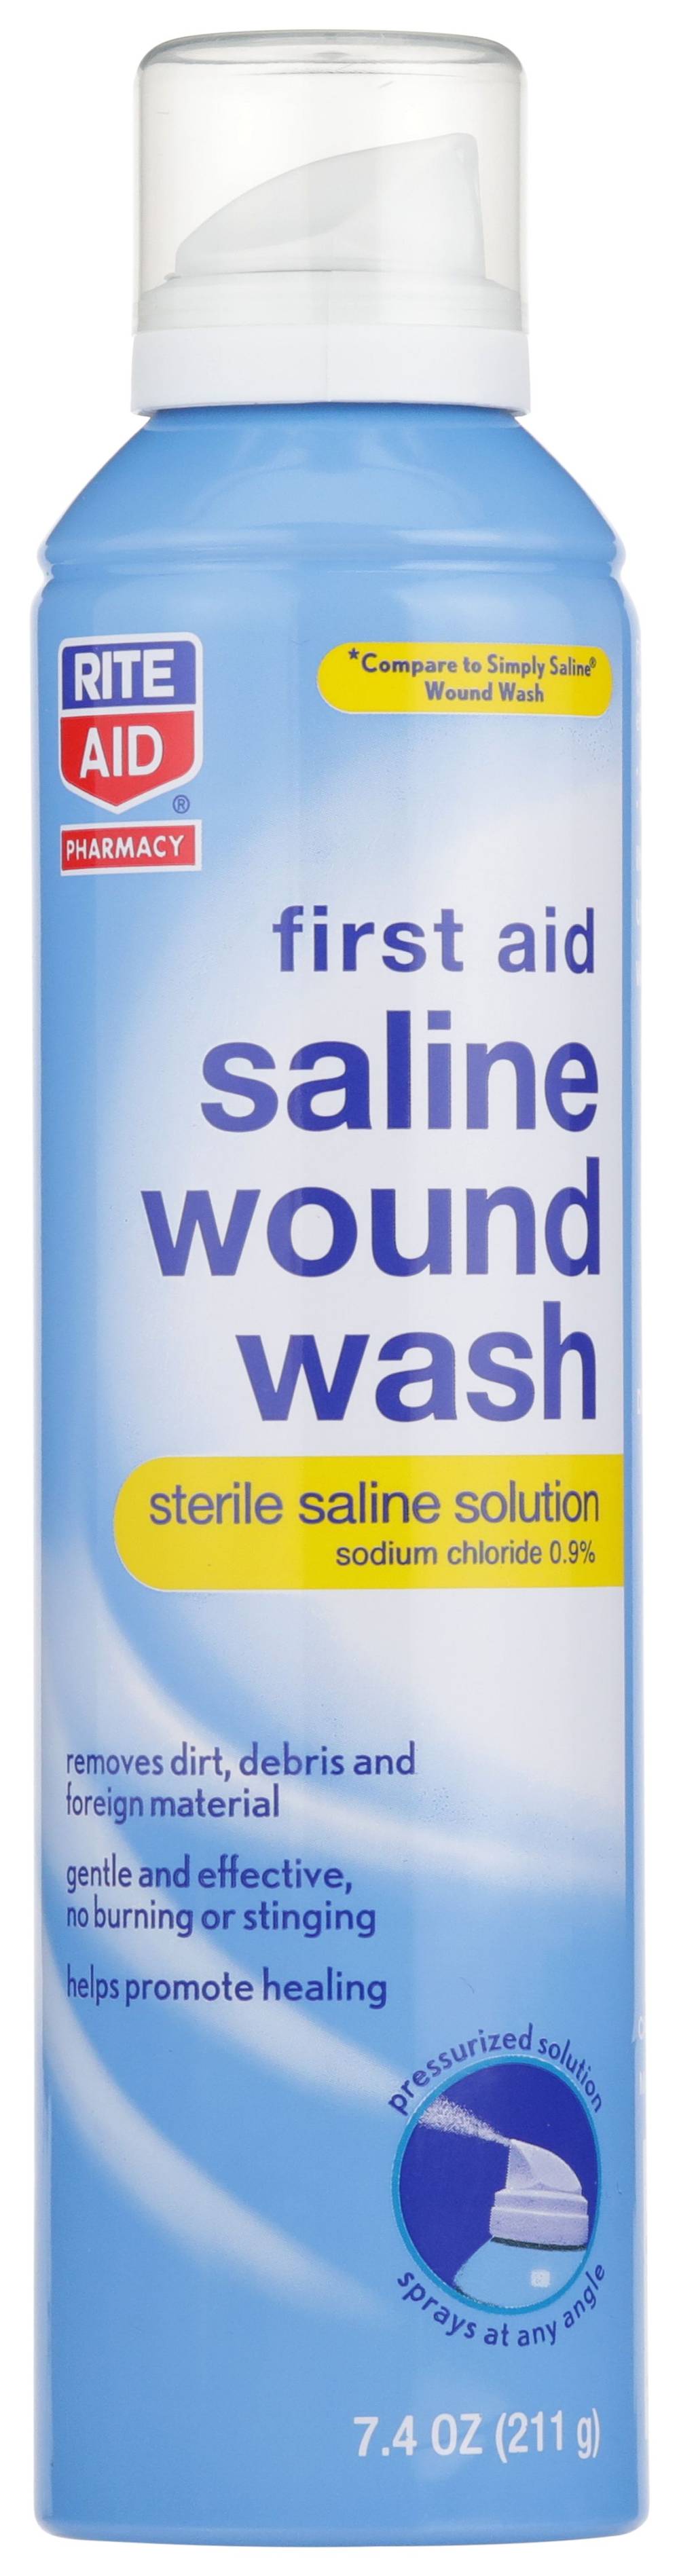 Rite Aid Sterile Saline Wound Wash Spray